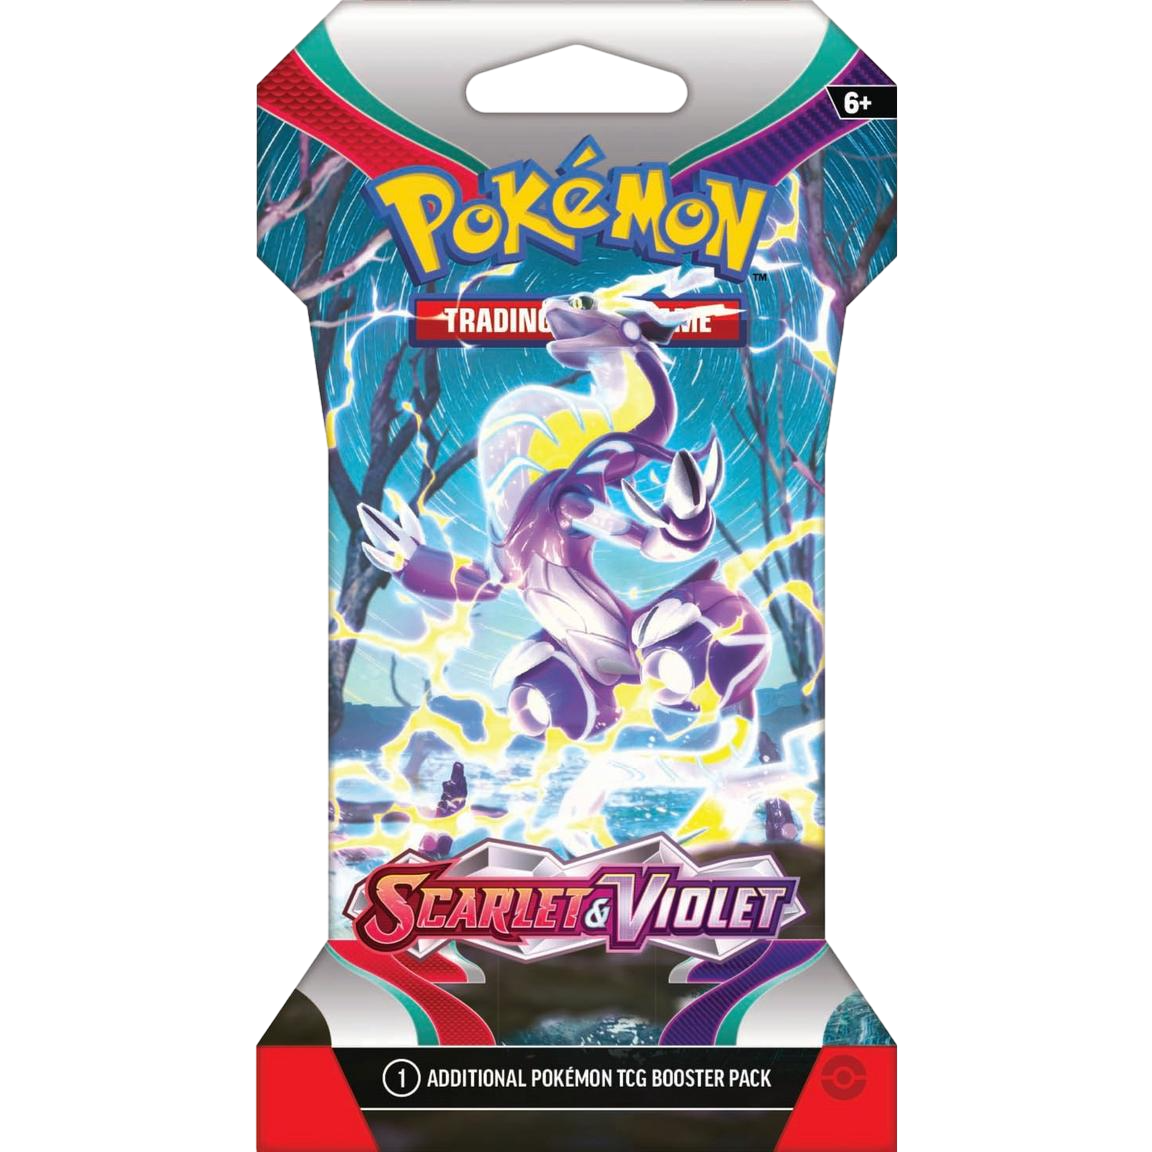 Pokémon TCG: Scarlet & Violet Base Set Sleeved Booster Packs